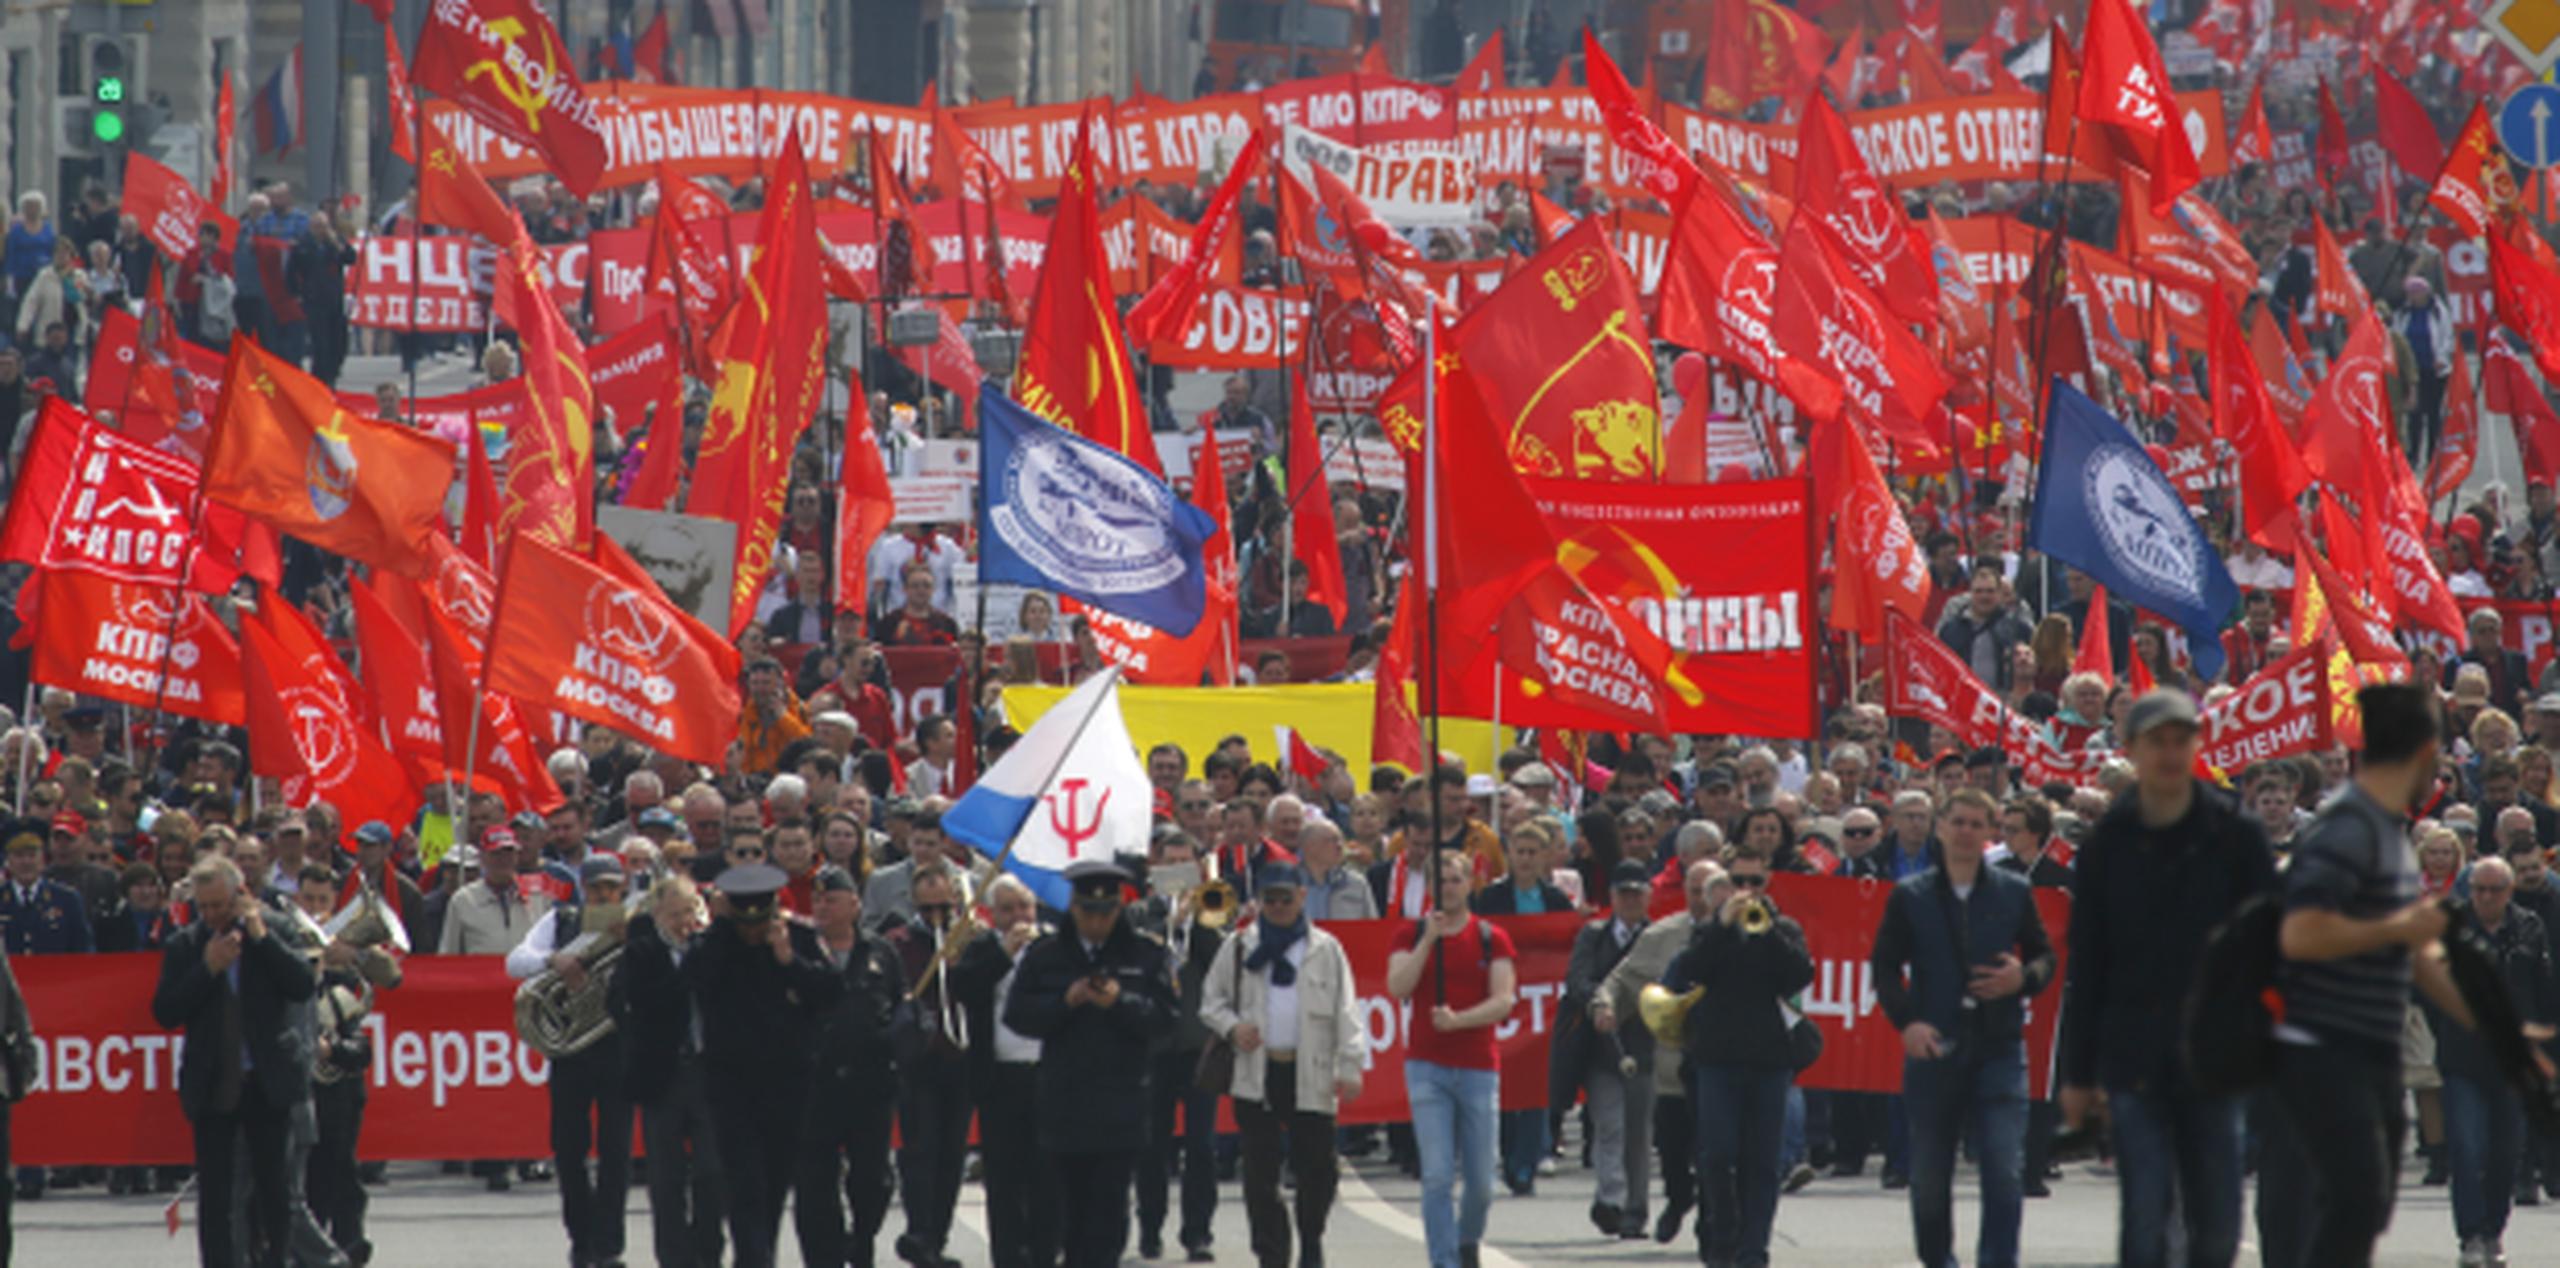 Manifestación en Rusia por el Día Internacional de los Trabajadores a la que se estima asistieron sobre 100,000 personas. (AP)